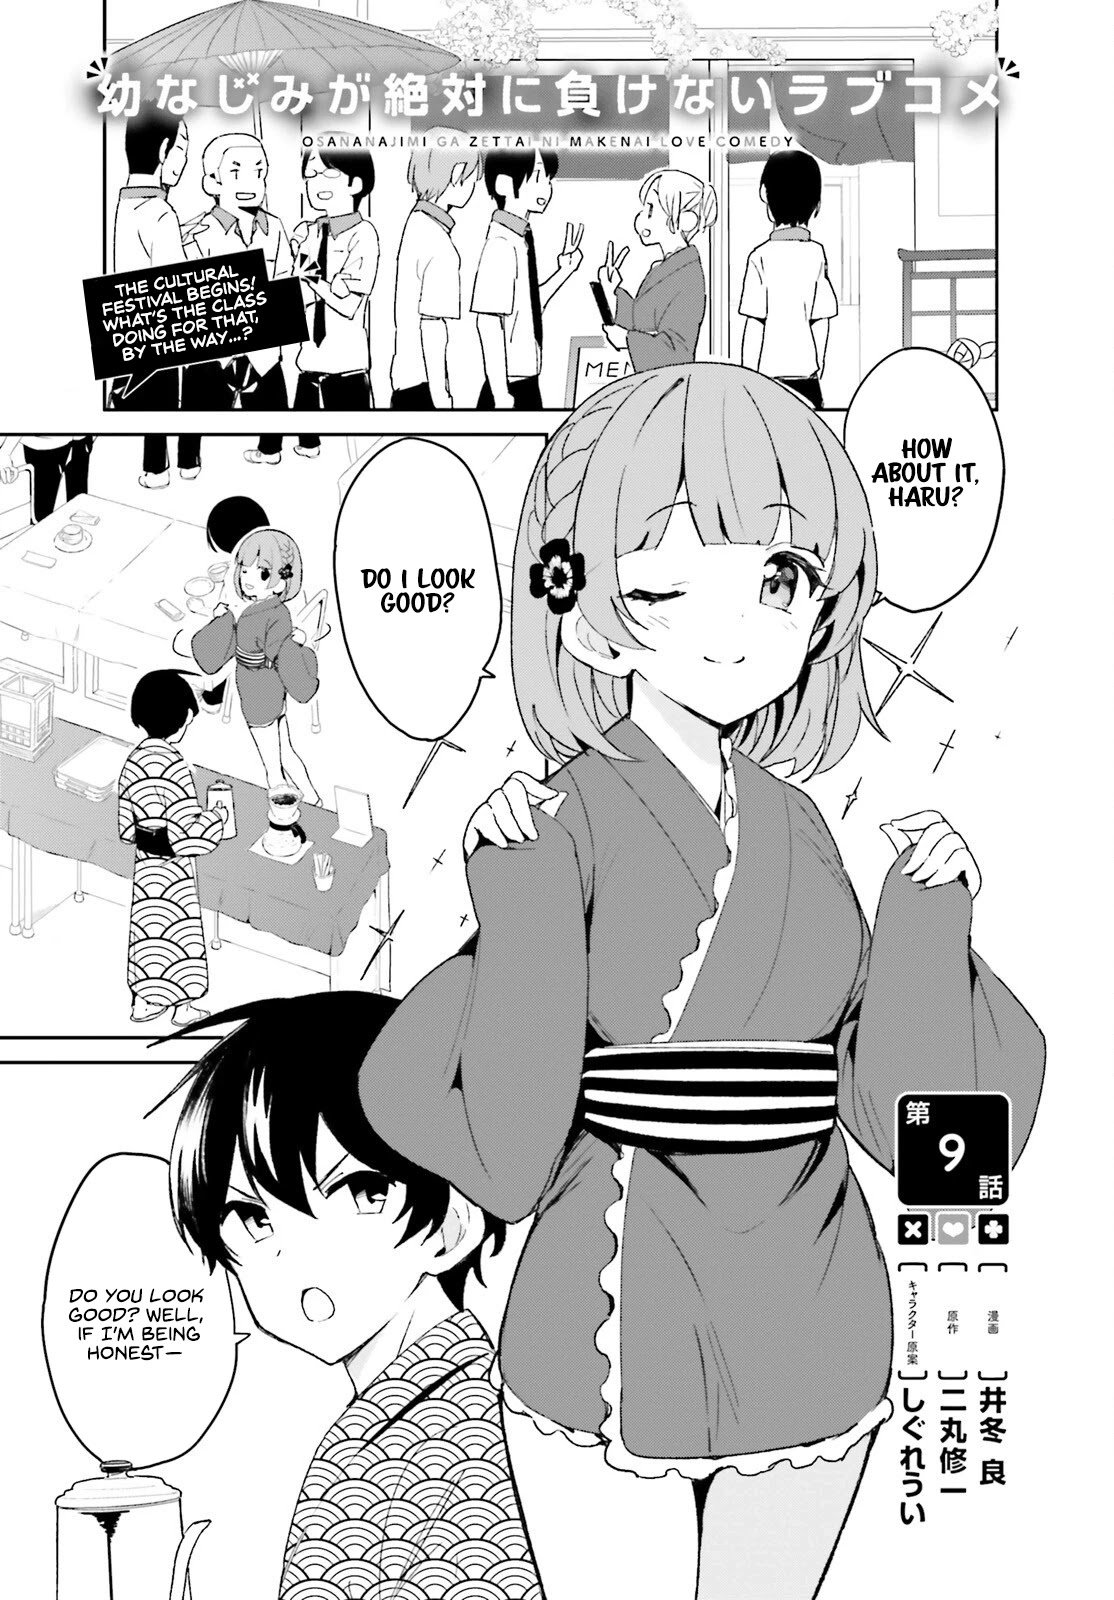 Read Osananajimi ga Zettai ni Makenai Love Comedy Manga English